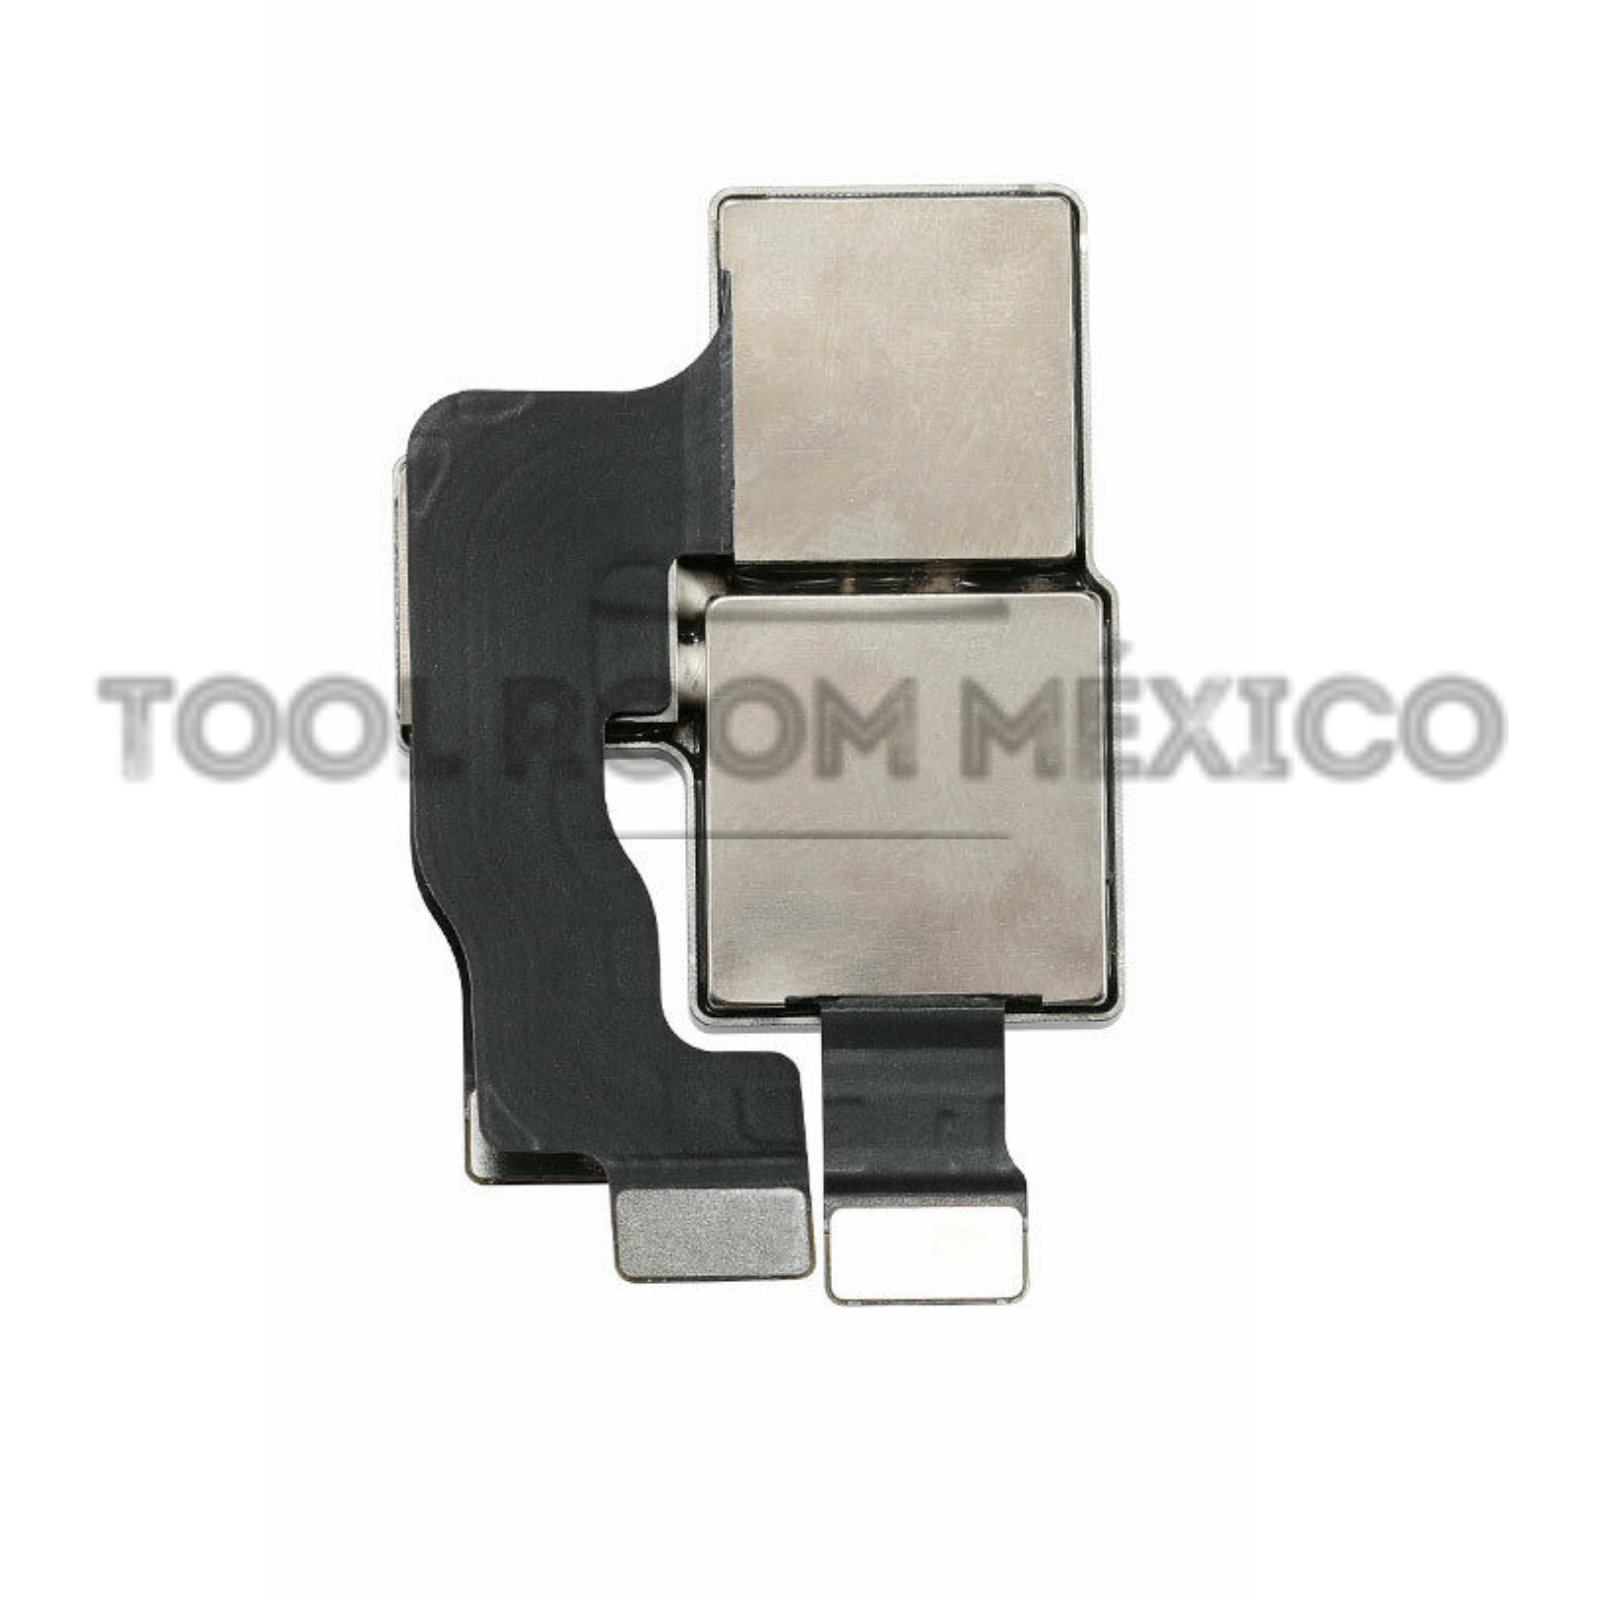 Cristal Superior de Cámara Trasera iPhone 11 y 11 Pro – Tool Room México